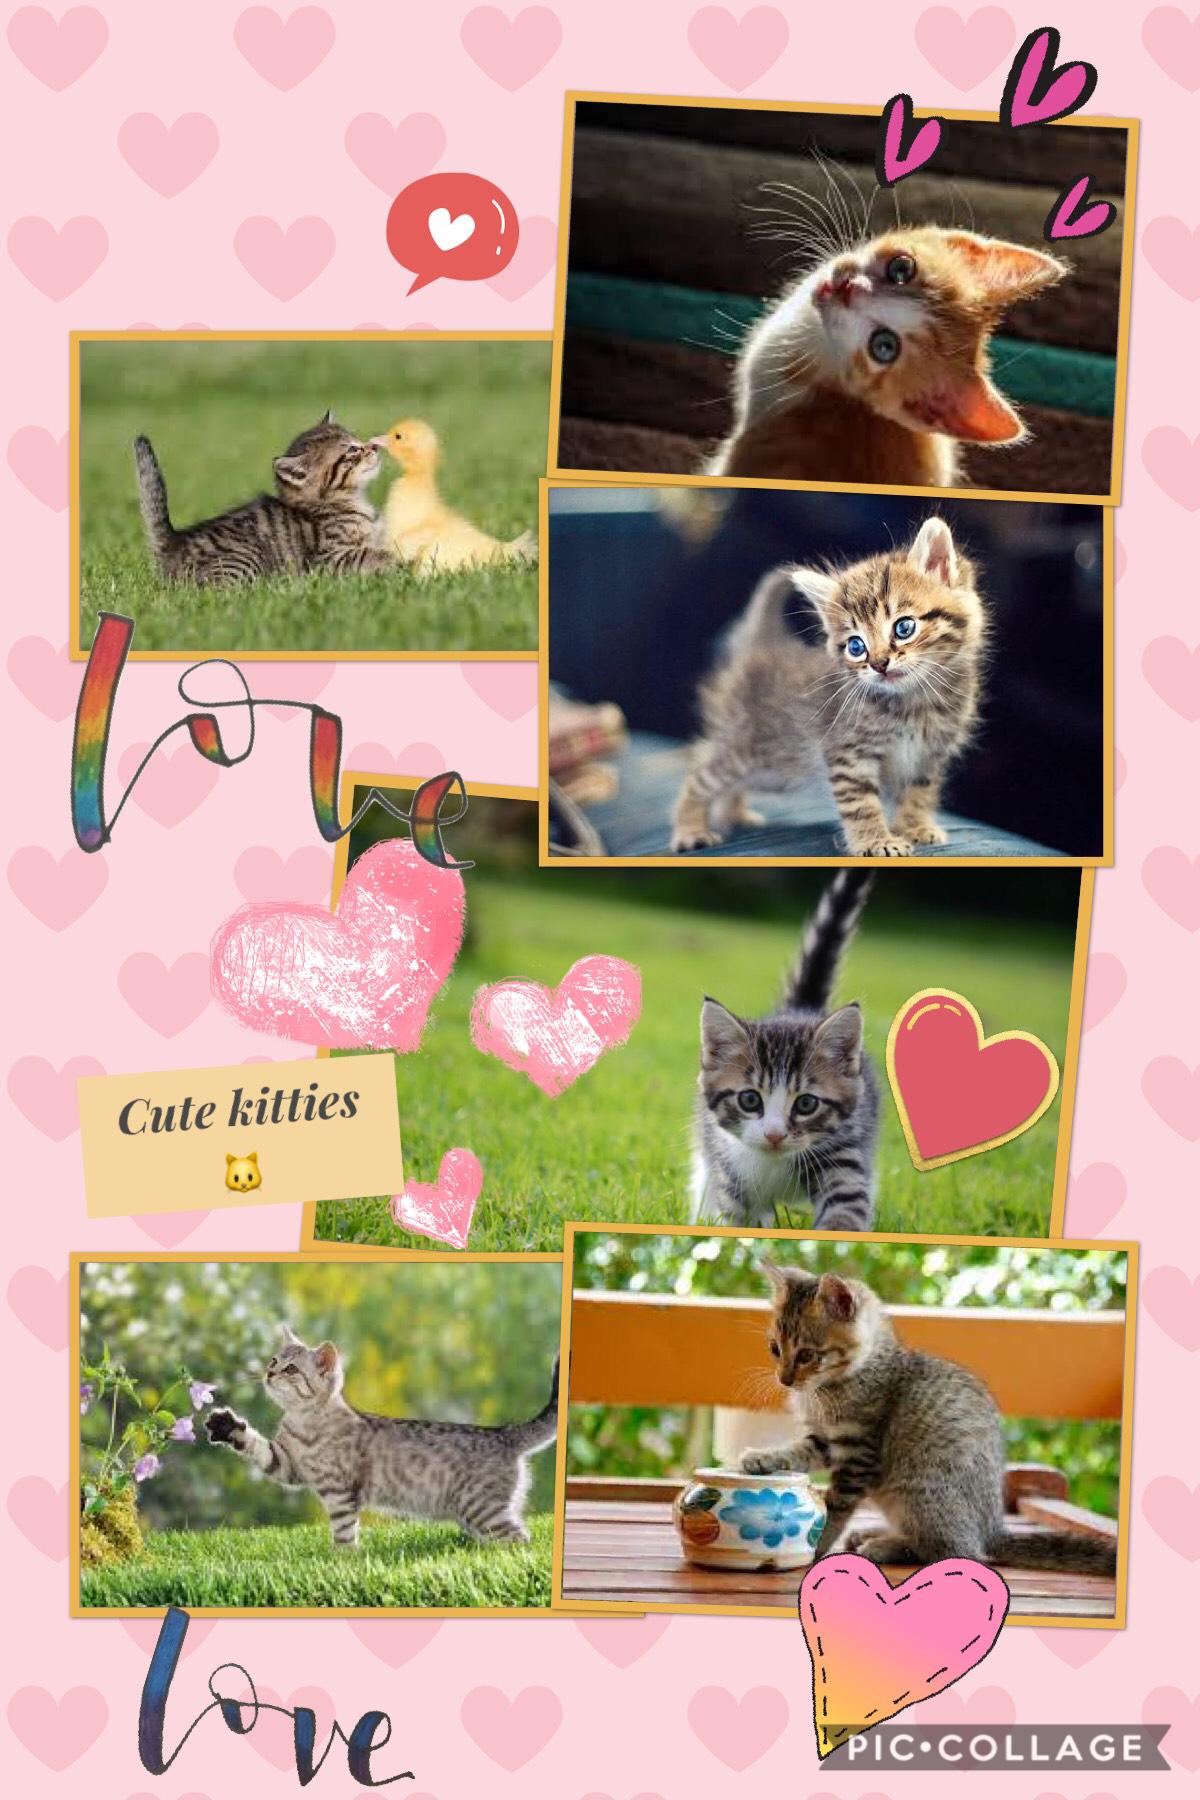 I love kittens!!!